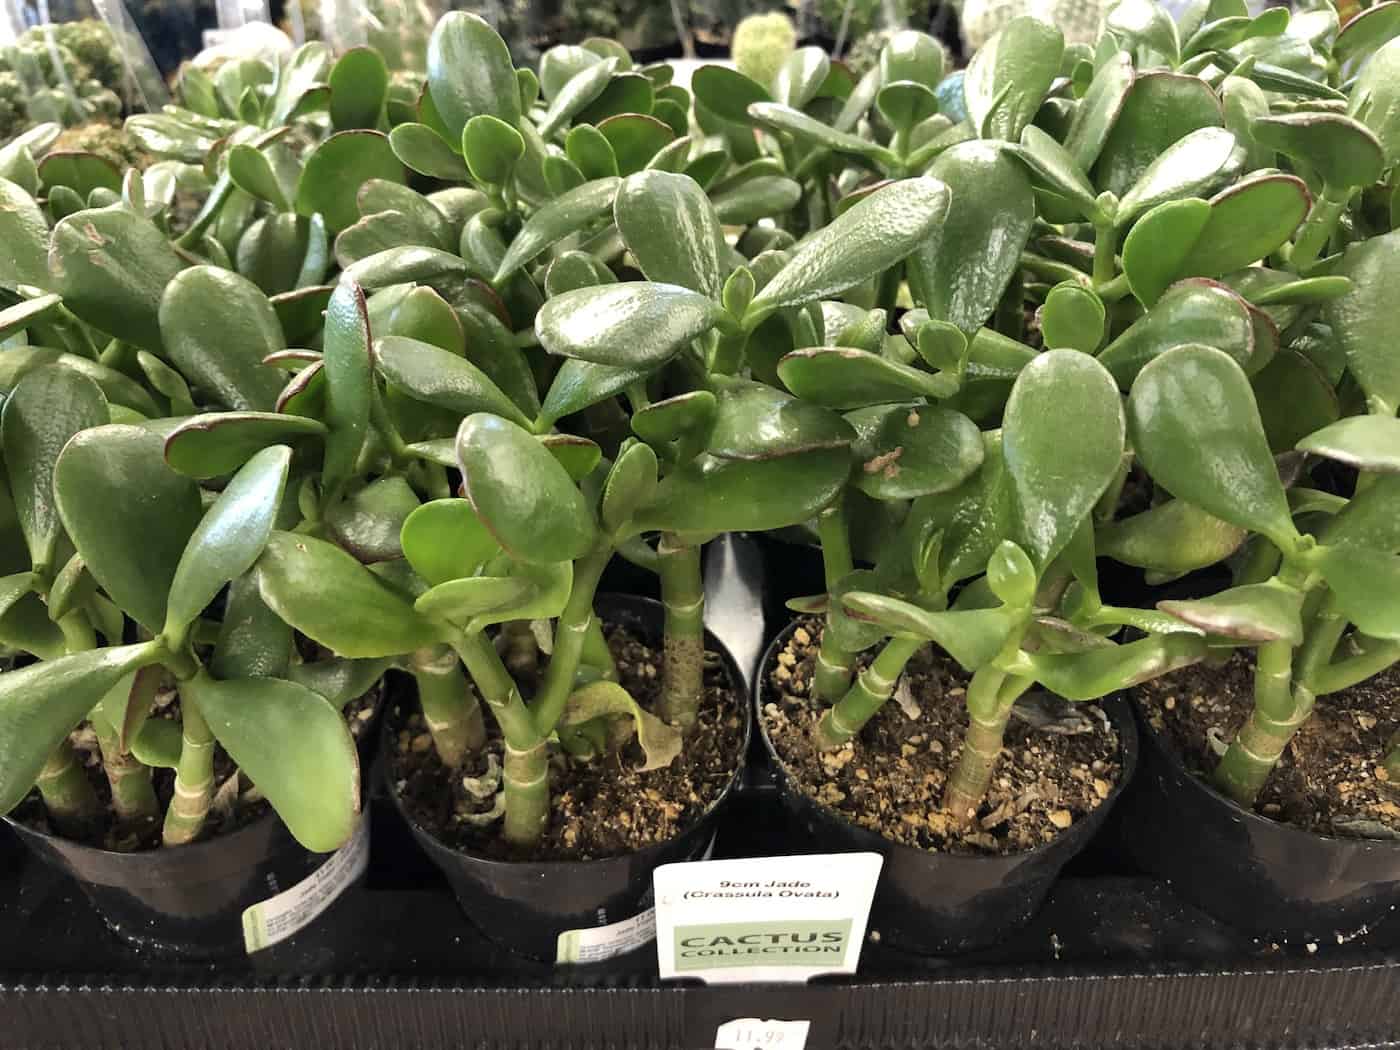 jade plants - crassula ovata - at plant shop